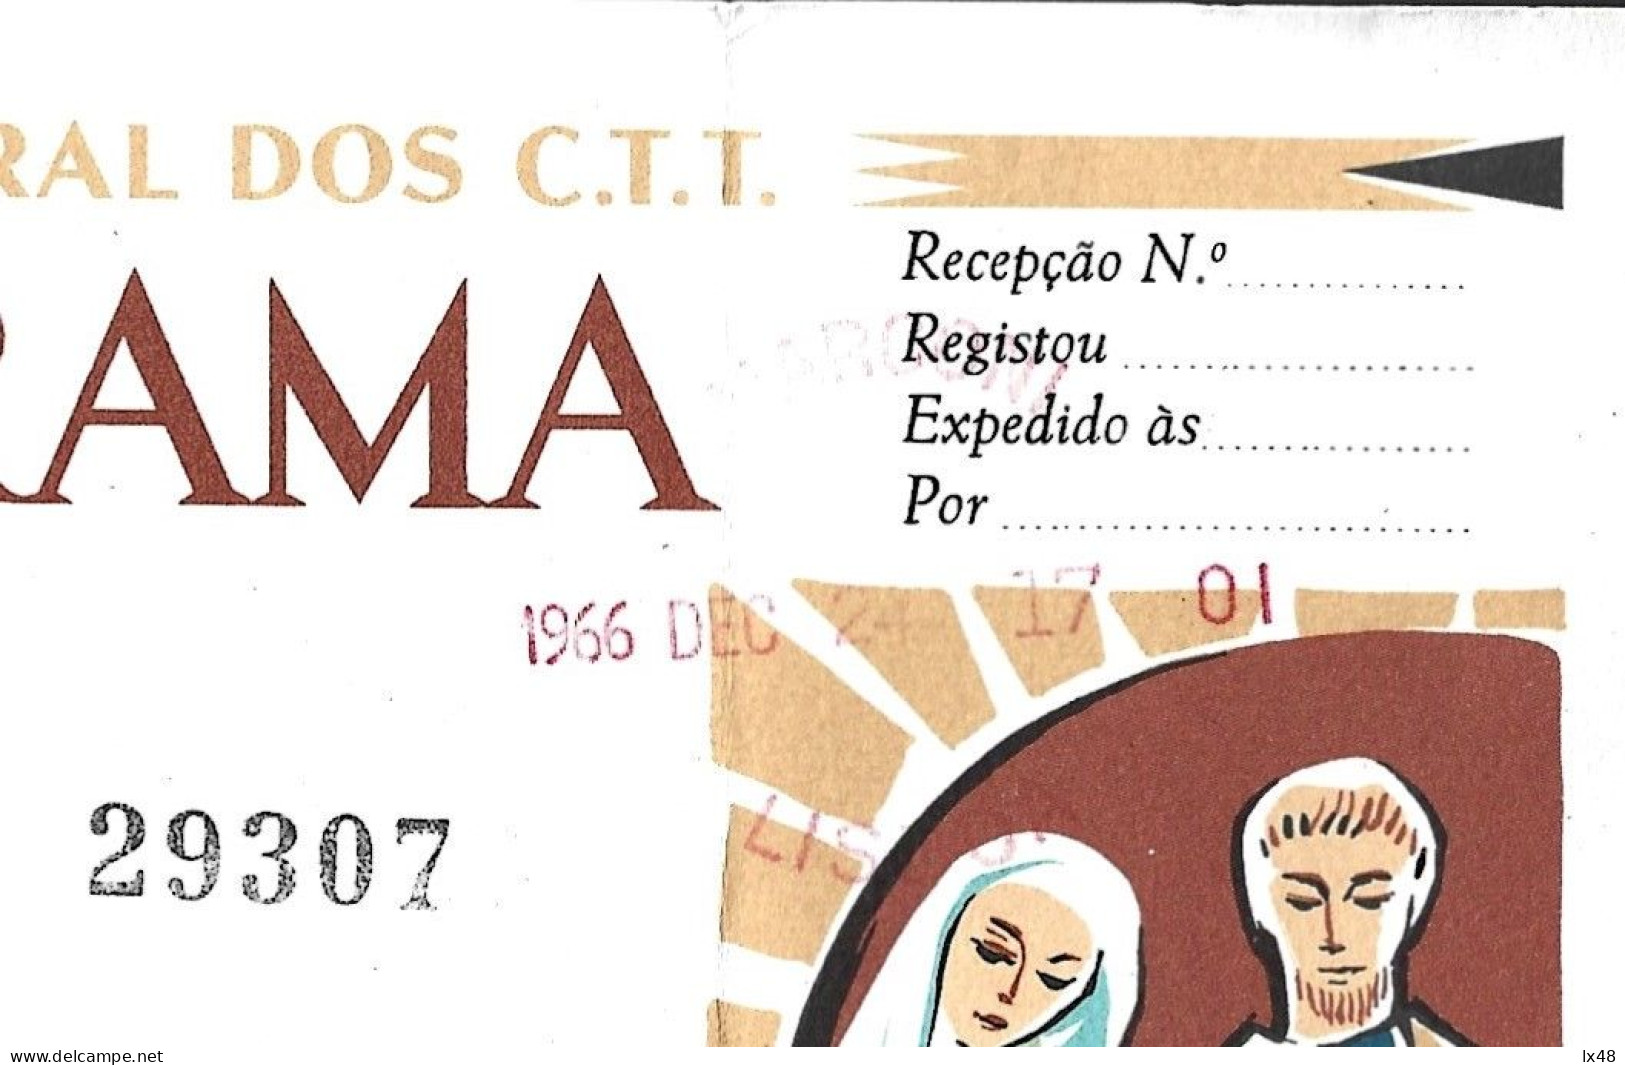 Telegrama Natal De Porte Pago. Expedido Luanda, Angola/Lisboa, Obliteração Da Rádio Marconi 1966. Postage Paid Christmas - Covers & Documents